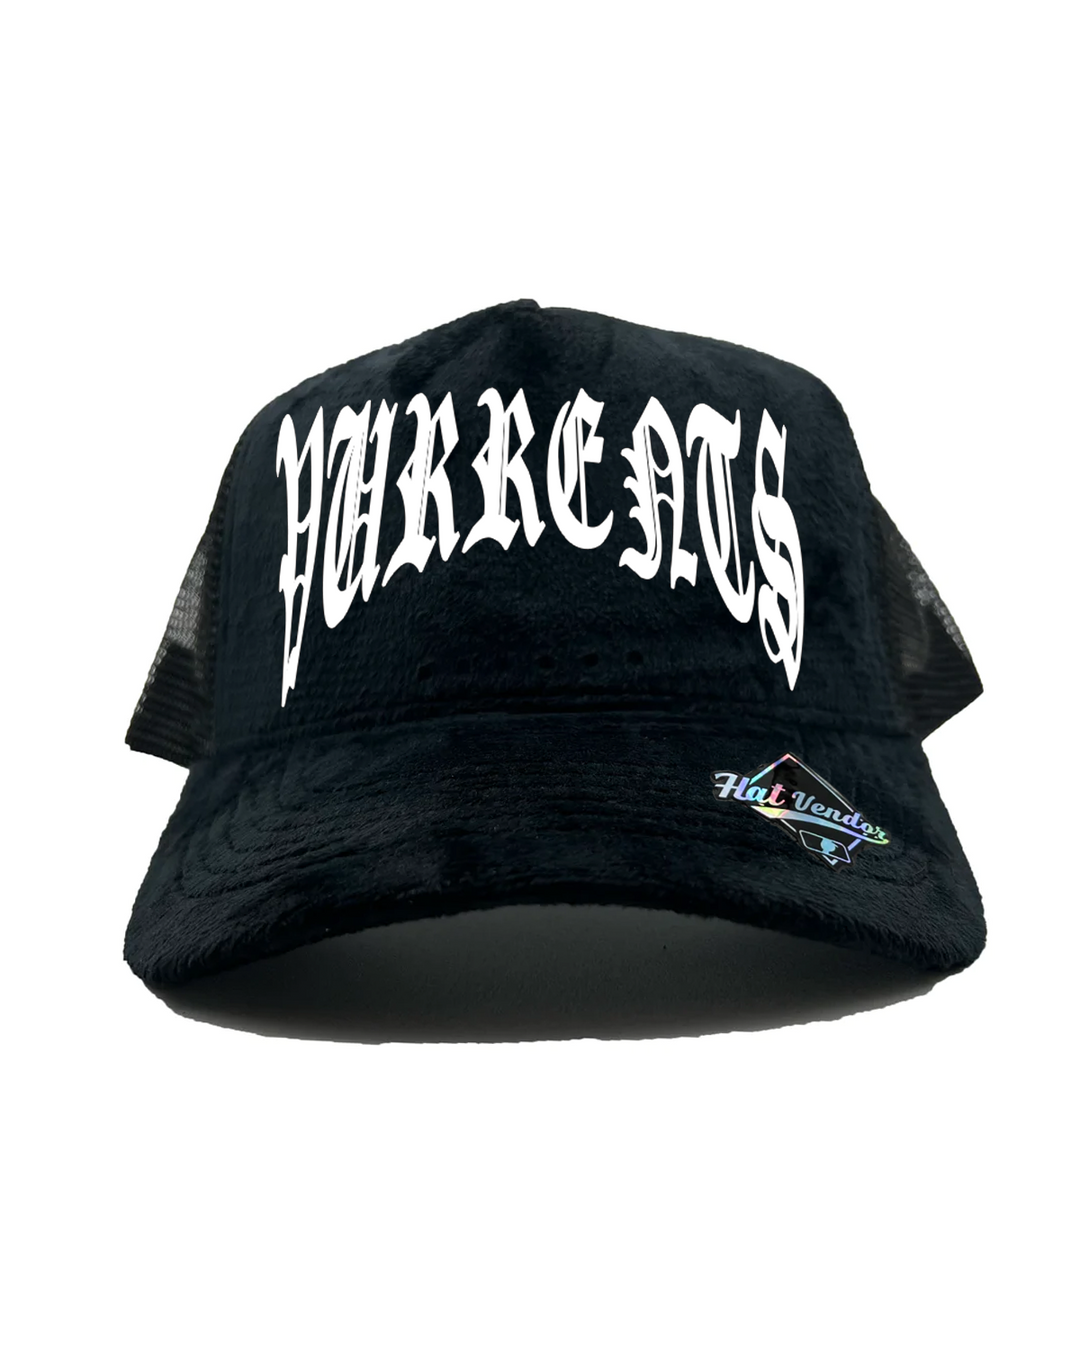 Vurrents Black Suede Trucker Hat